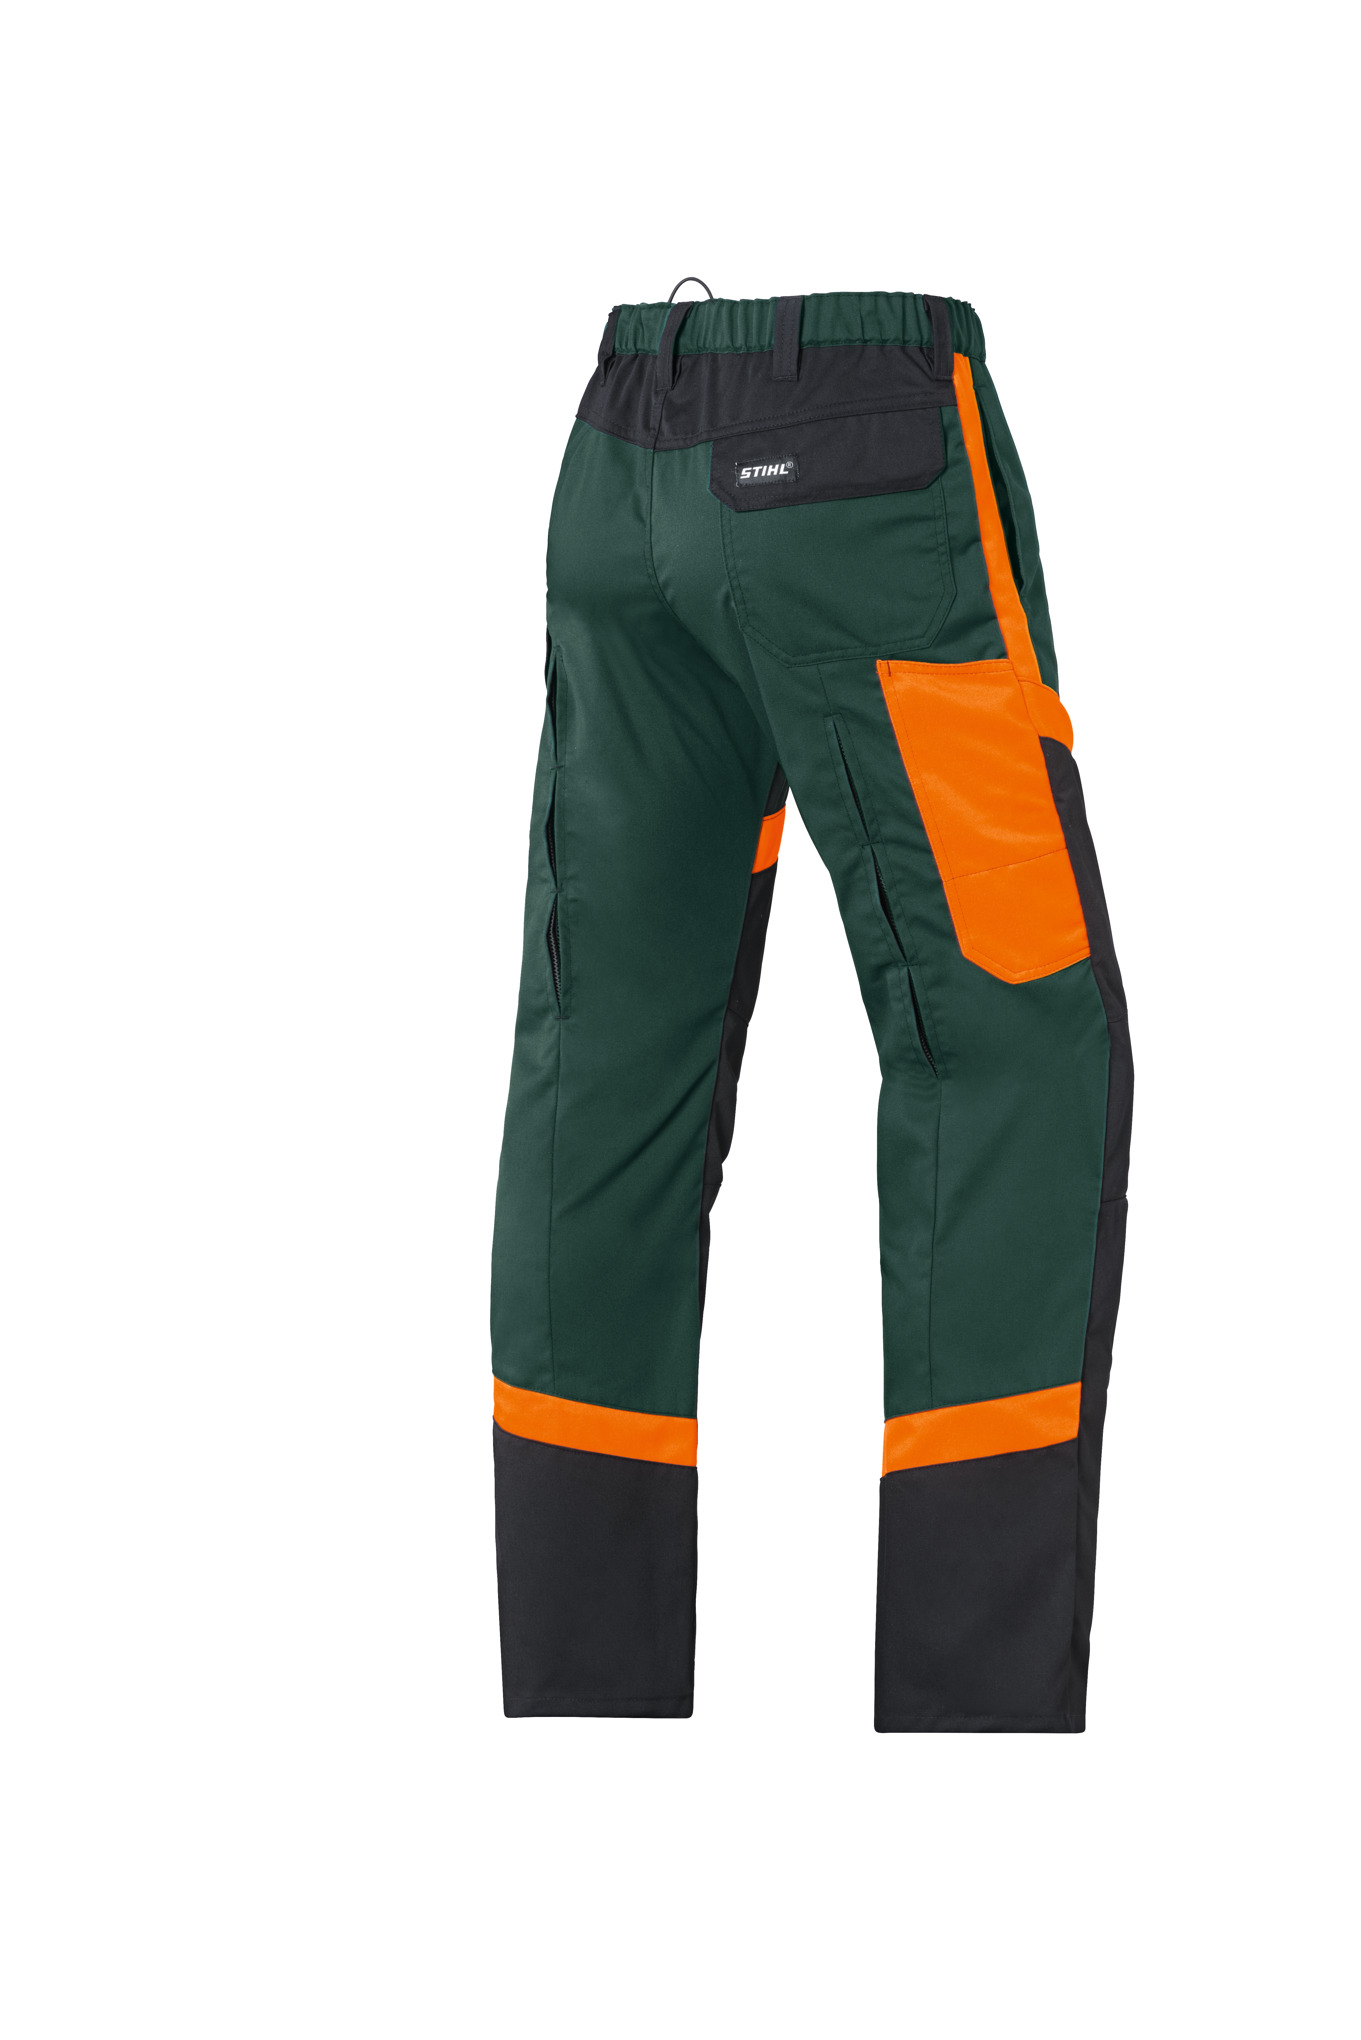 Kalhoty pro práci s křovinořezy FS PROTECT